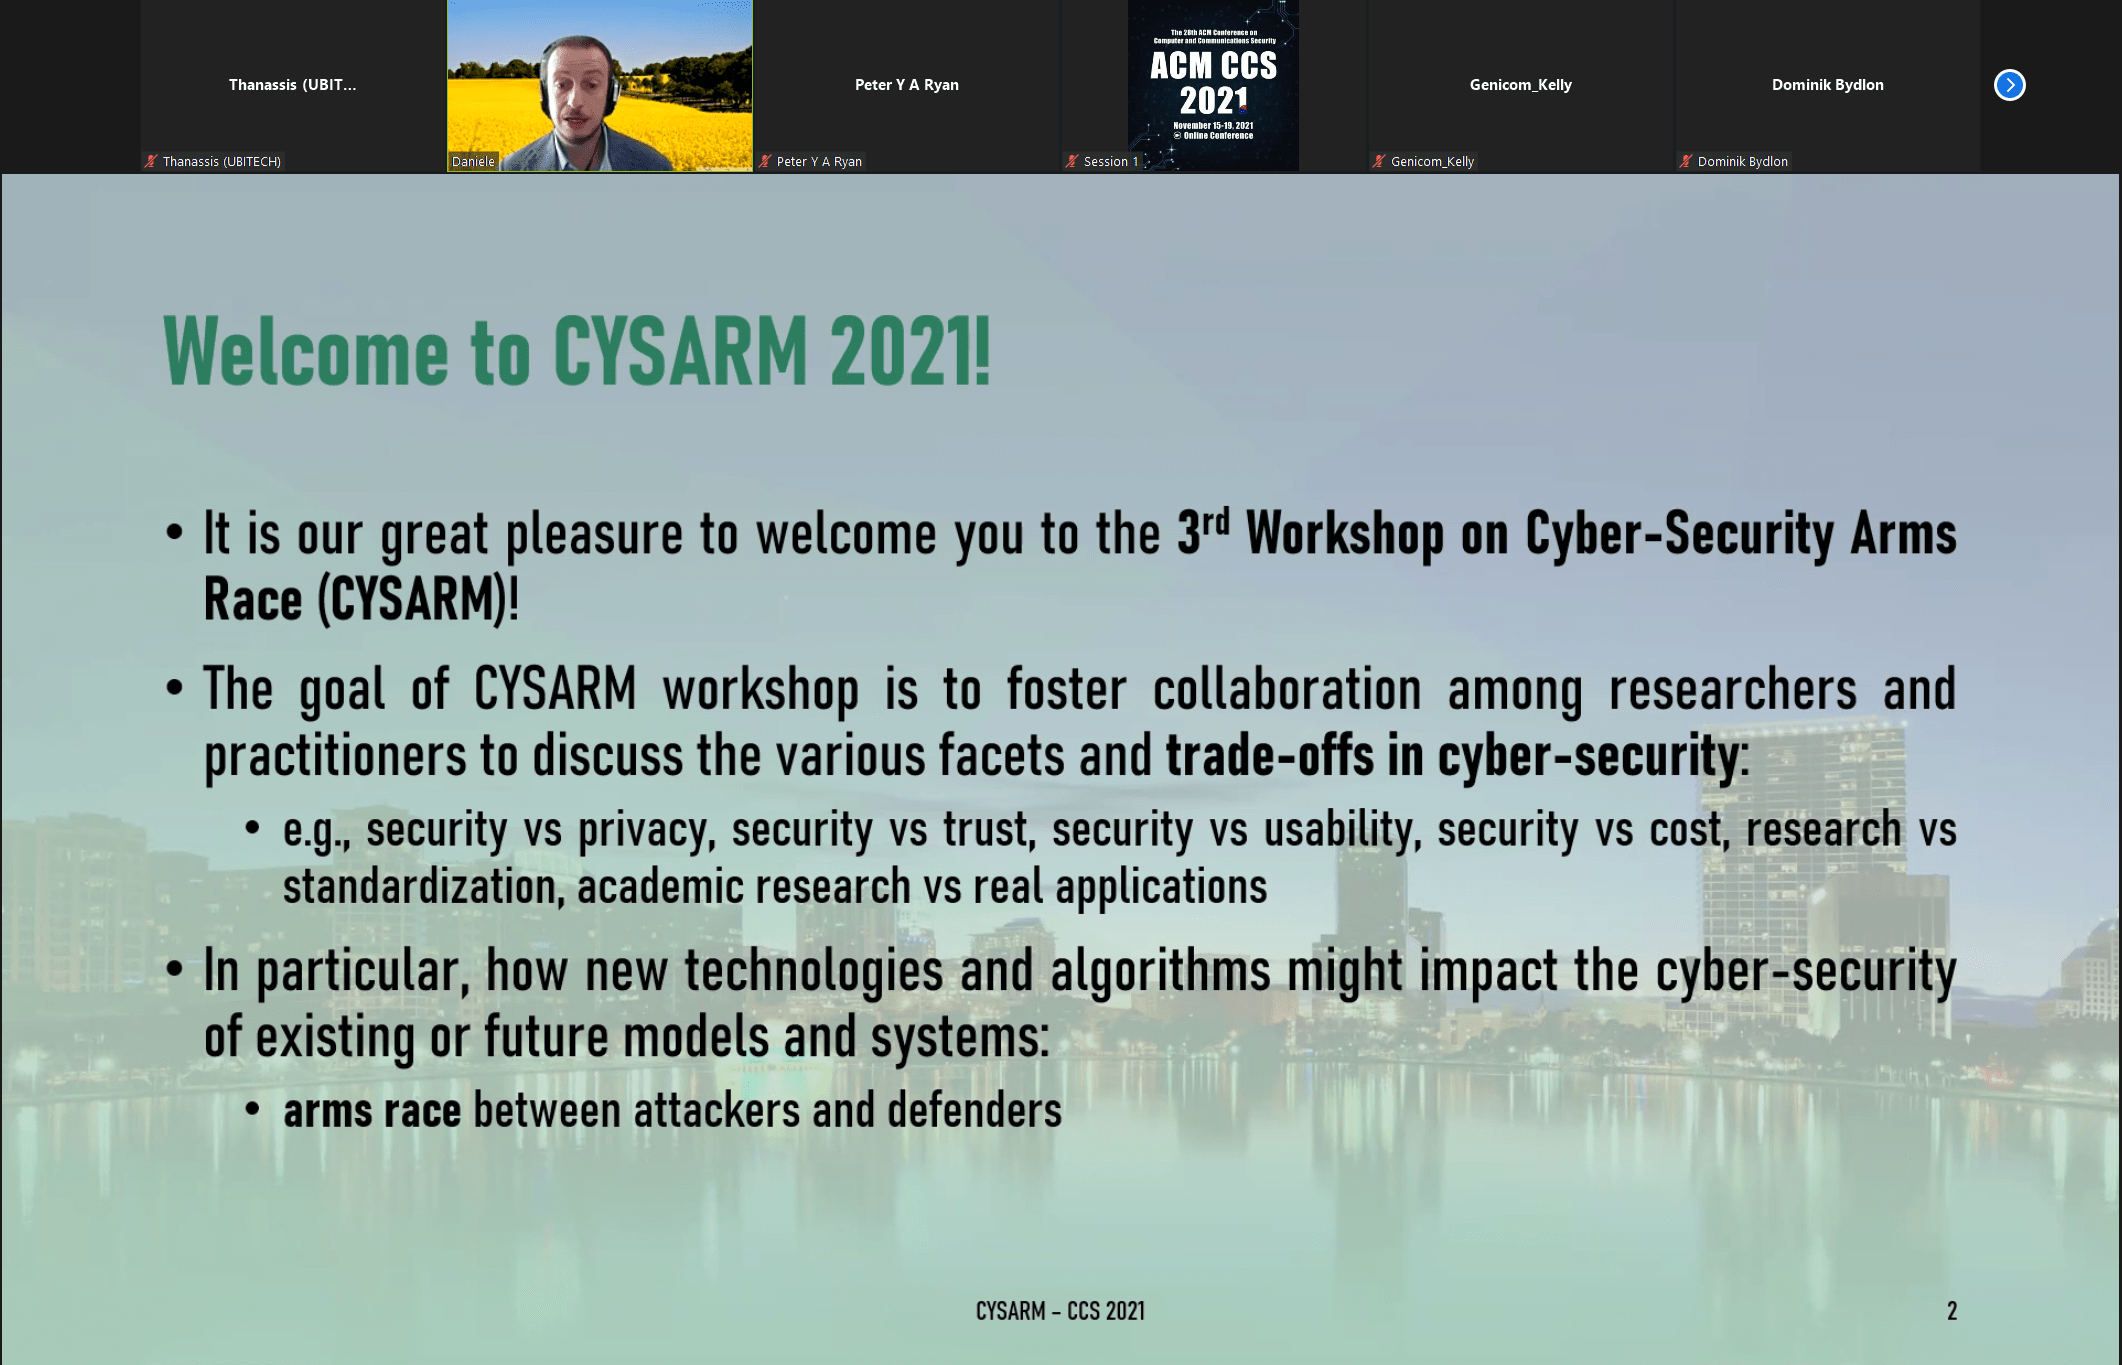 CYSARM 2021